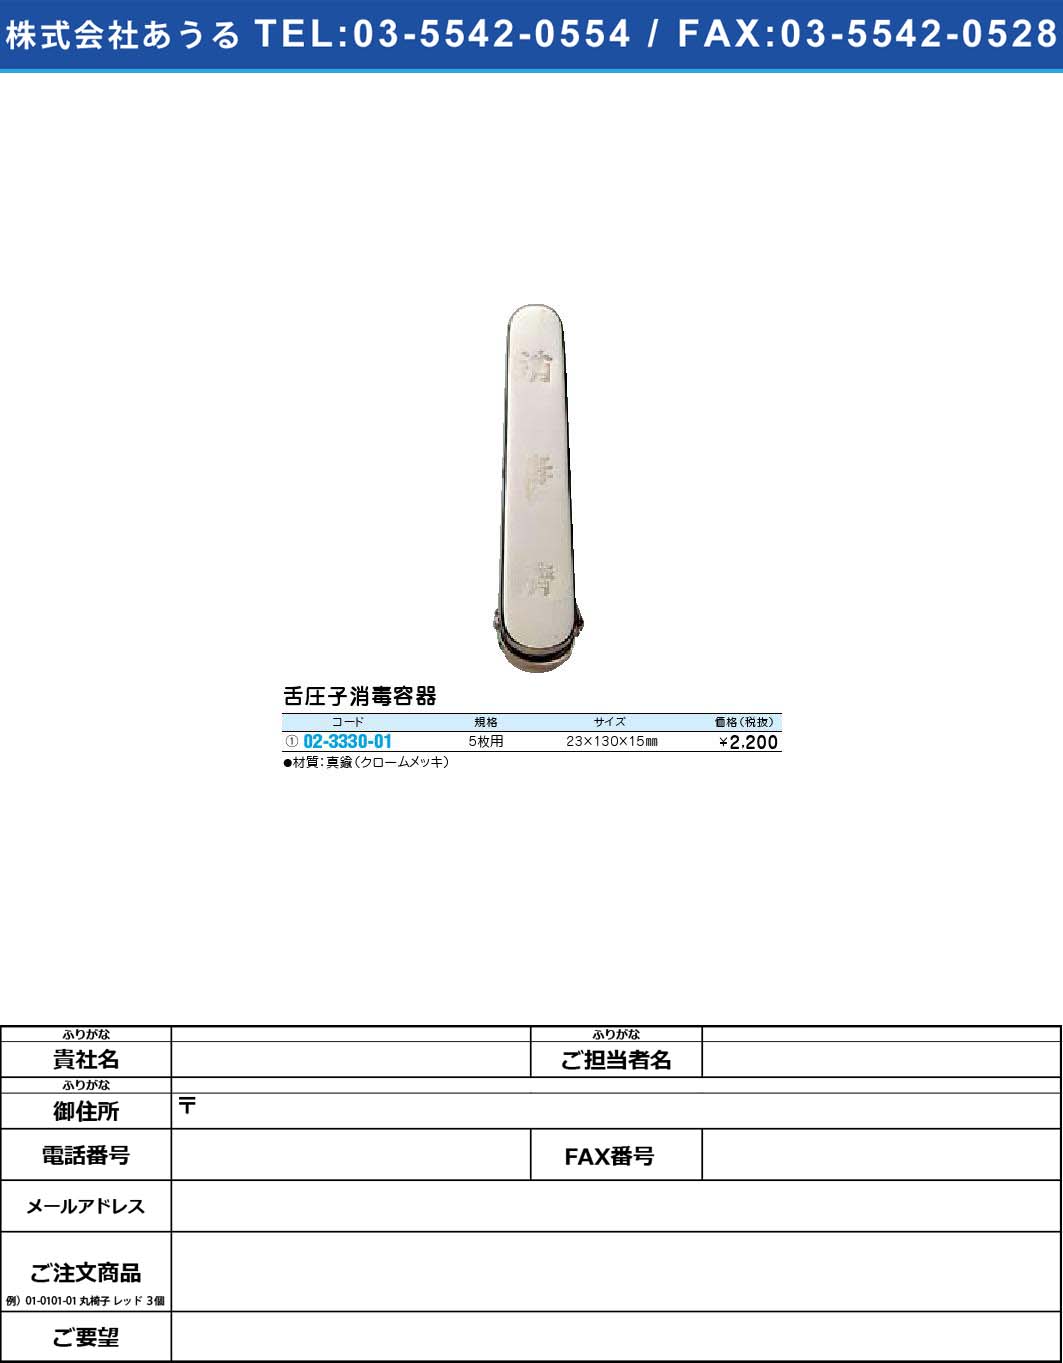 舌圧子消毒容器 【1単位】(02-3330-01)